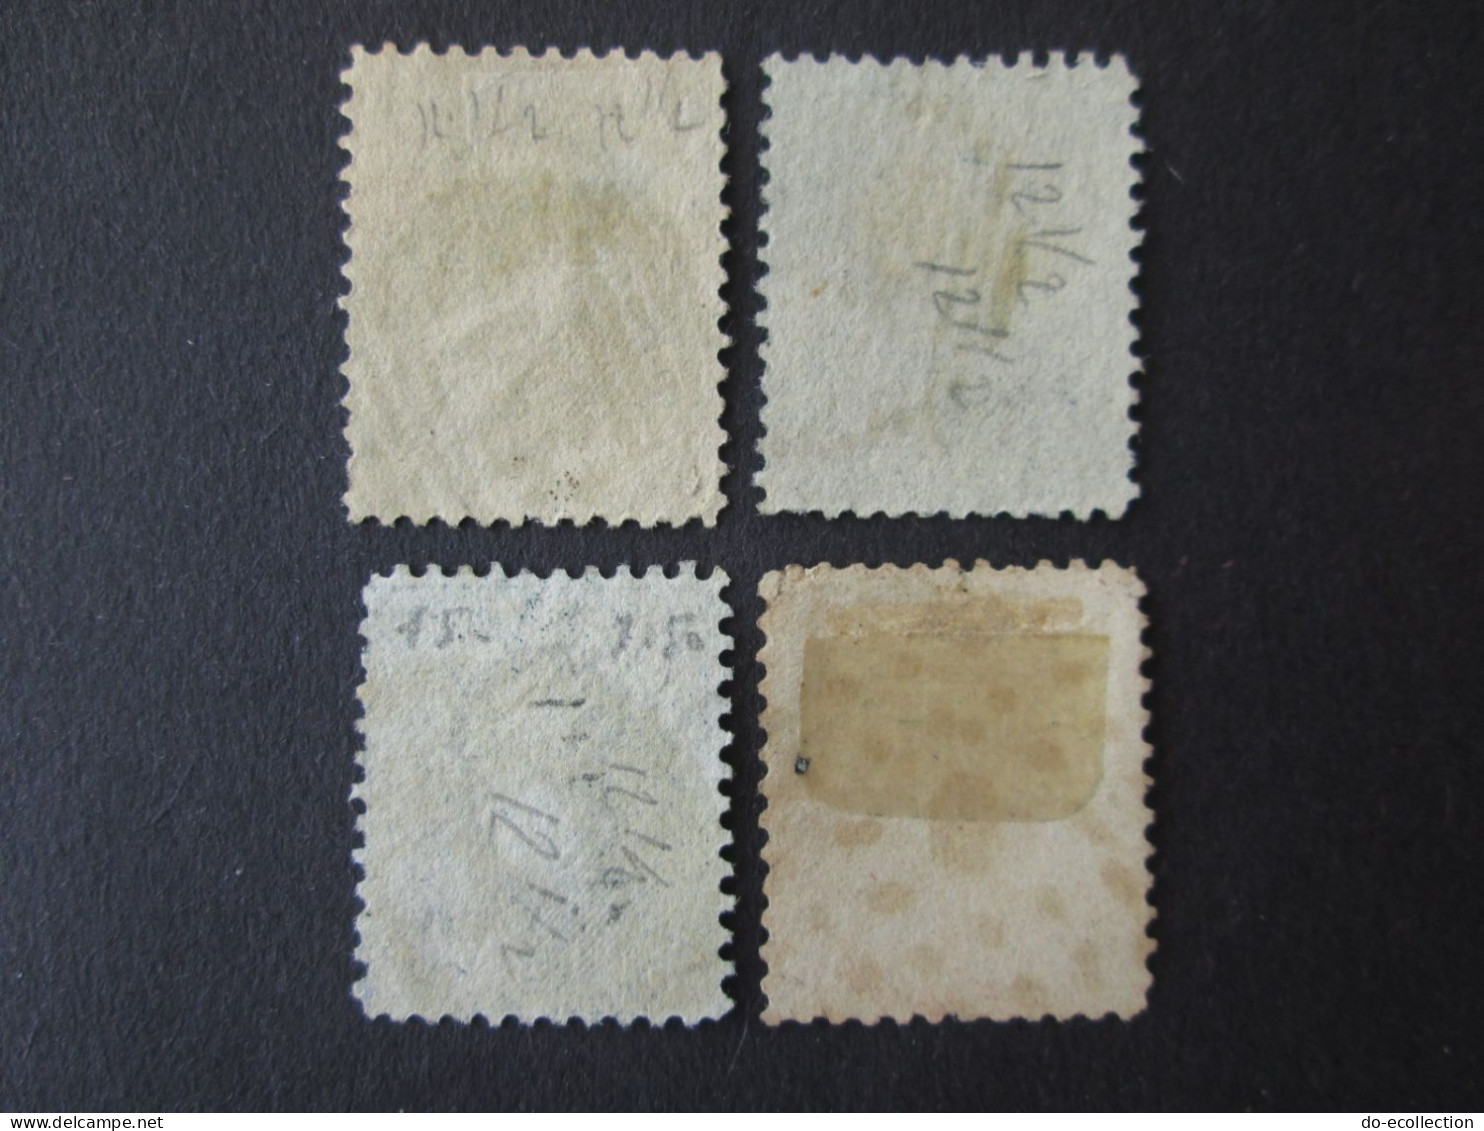 BELGIQUE 1863 Lot De 4 Timbres 10c 20c 40c Perf 12 1/2 Leopold I Dont Oblitération 4/9 Belgie Belgium Timbre Stamps - 1863-1864 Medaillons (13/16)